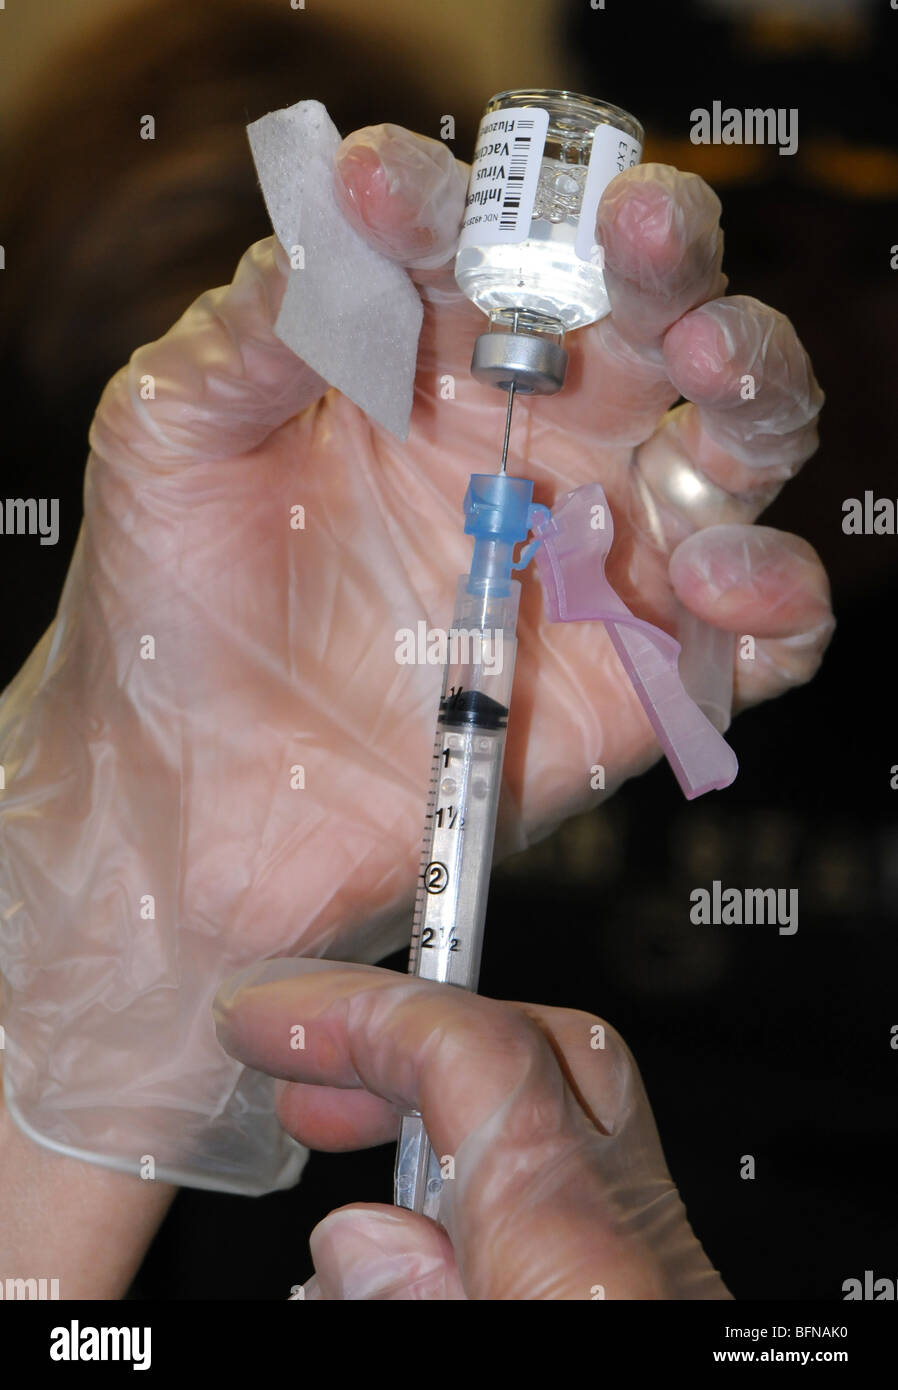 La préparation de l'infirmière pour donner une dose de vaccin contre la grippe Banque D'Images